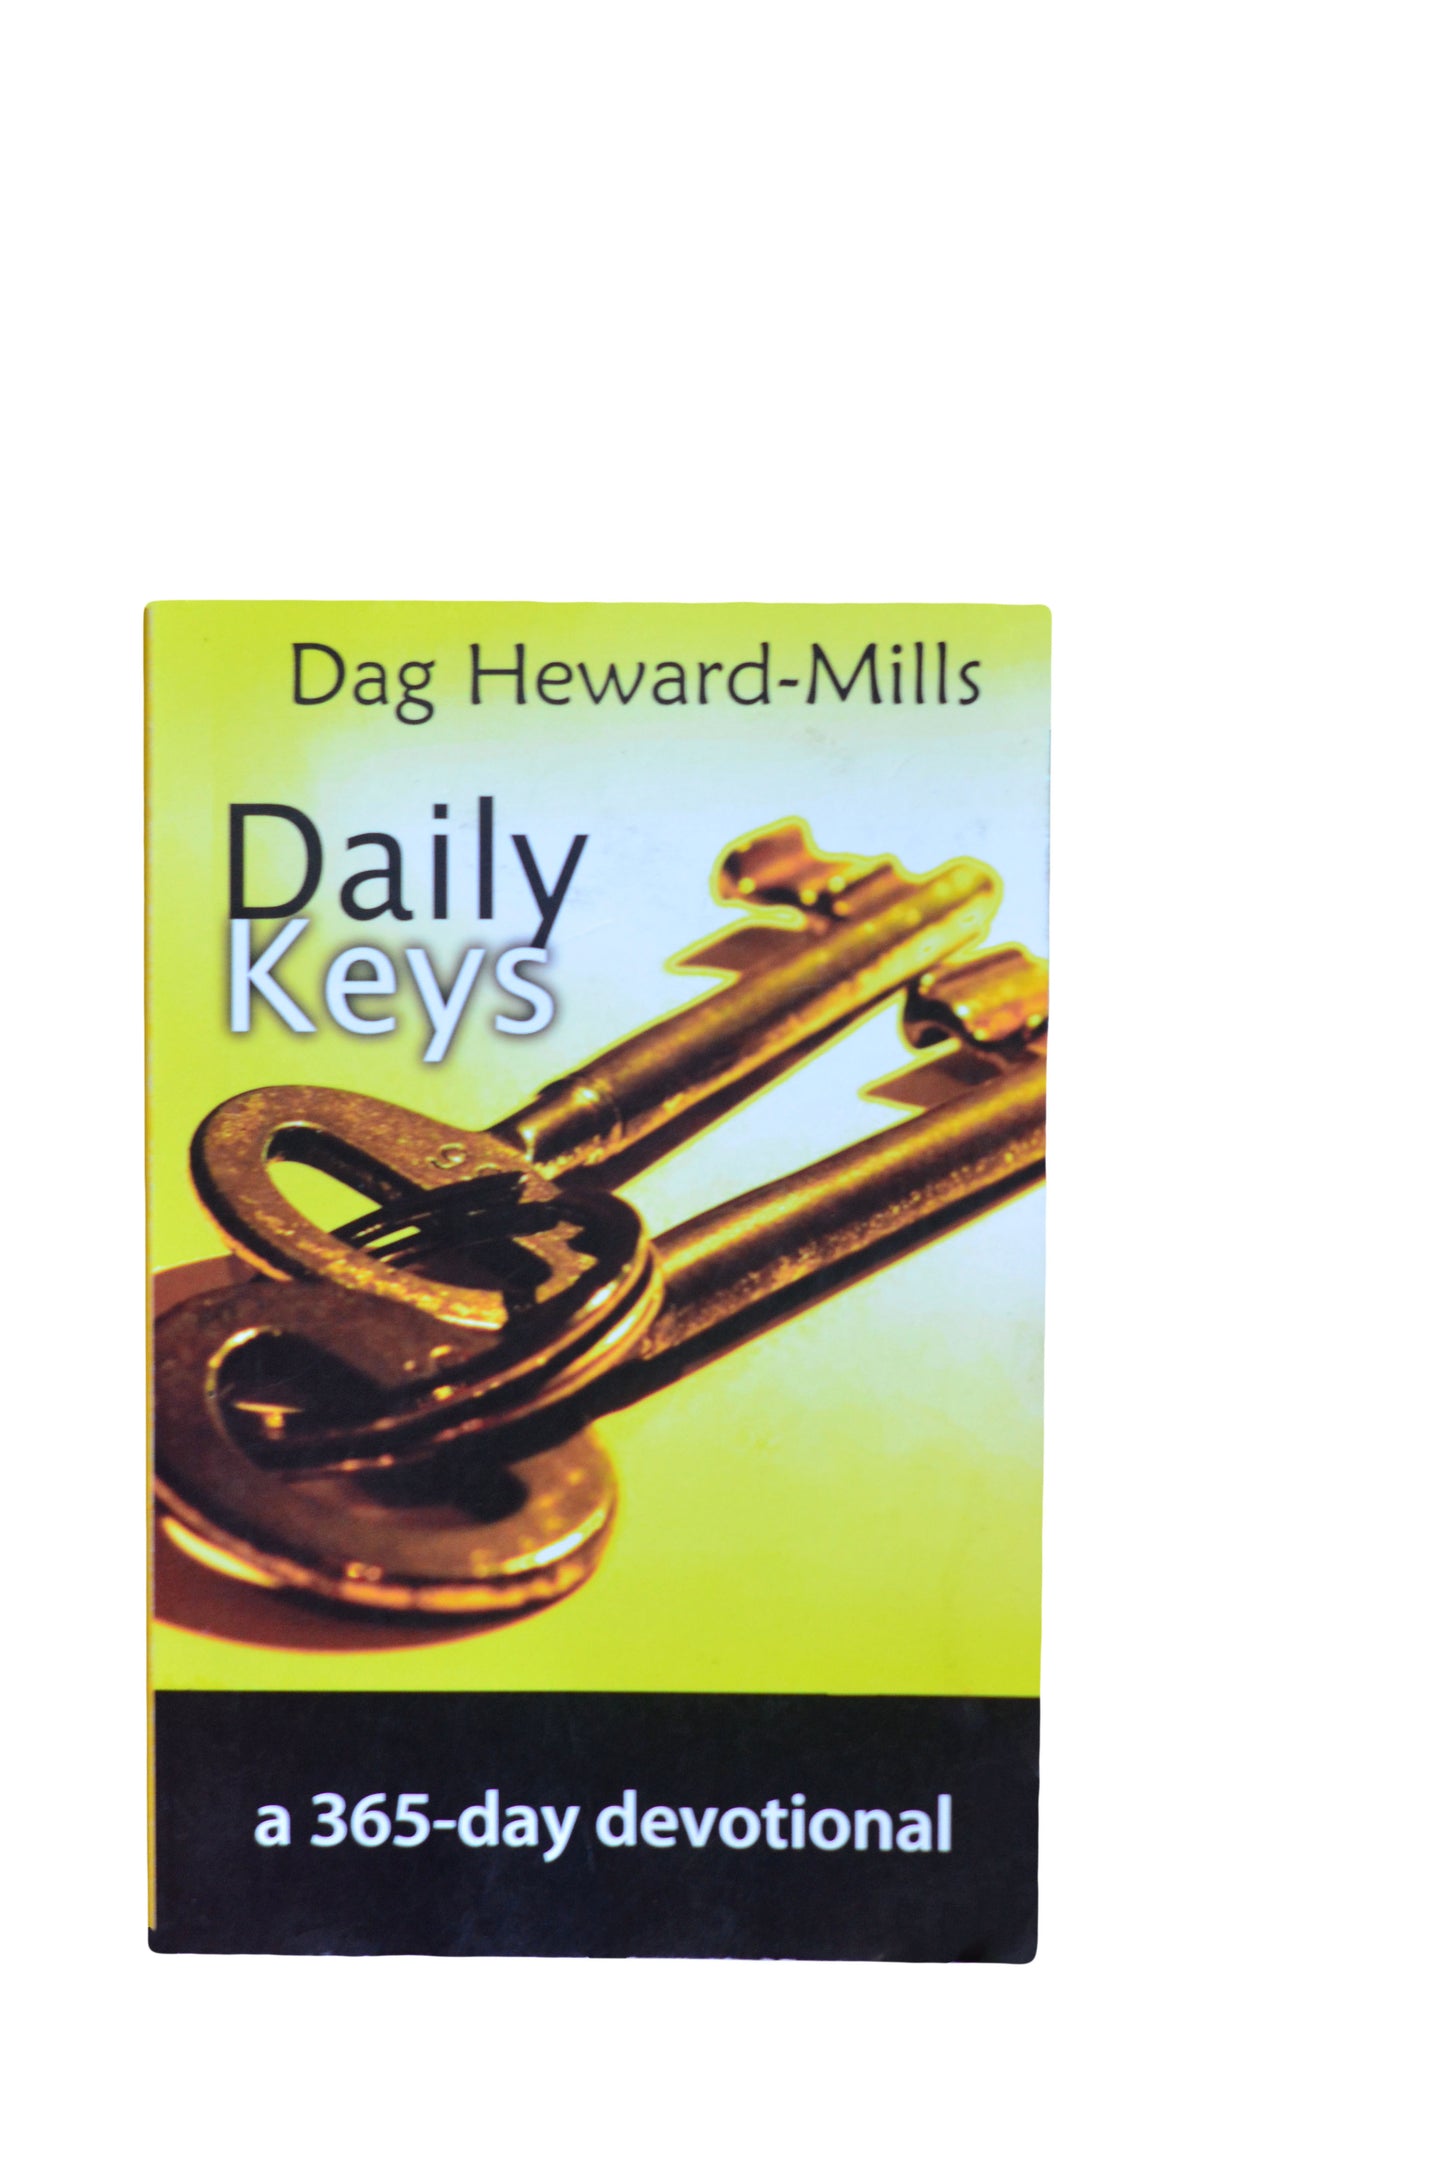 DAILY KEYS by Dag Heward-Mills